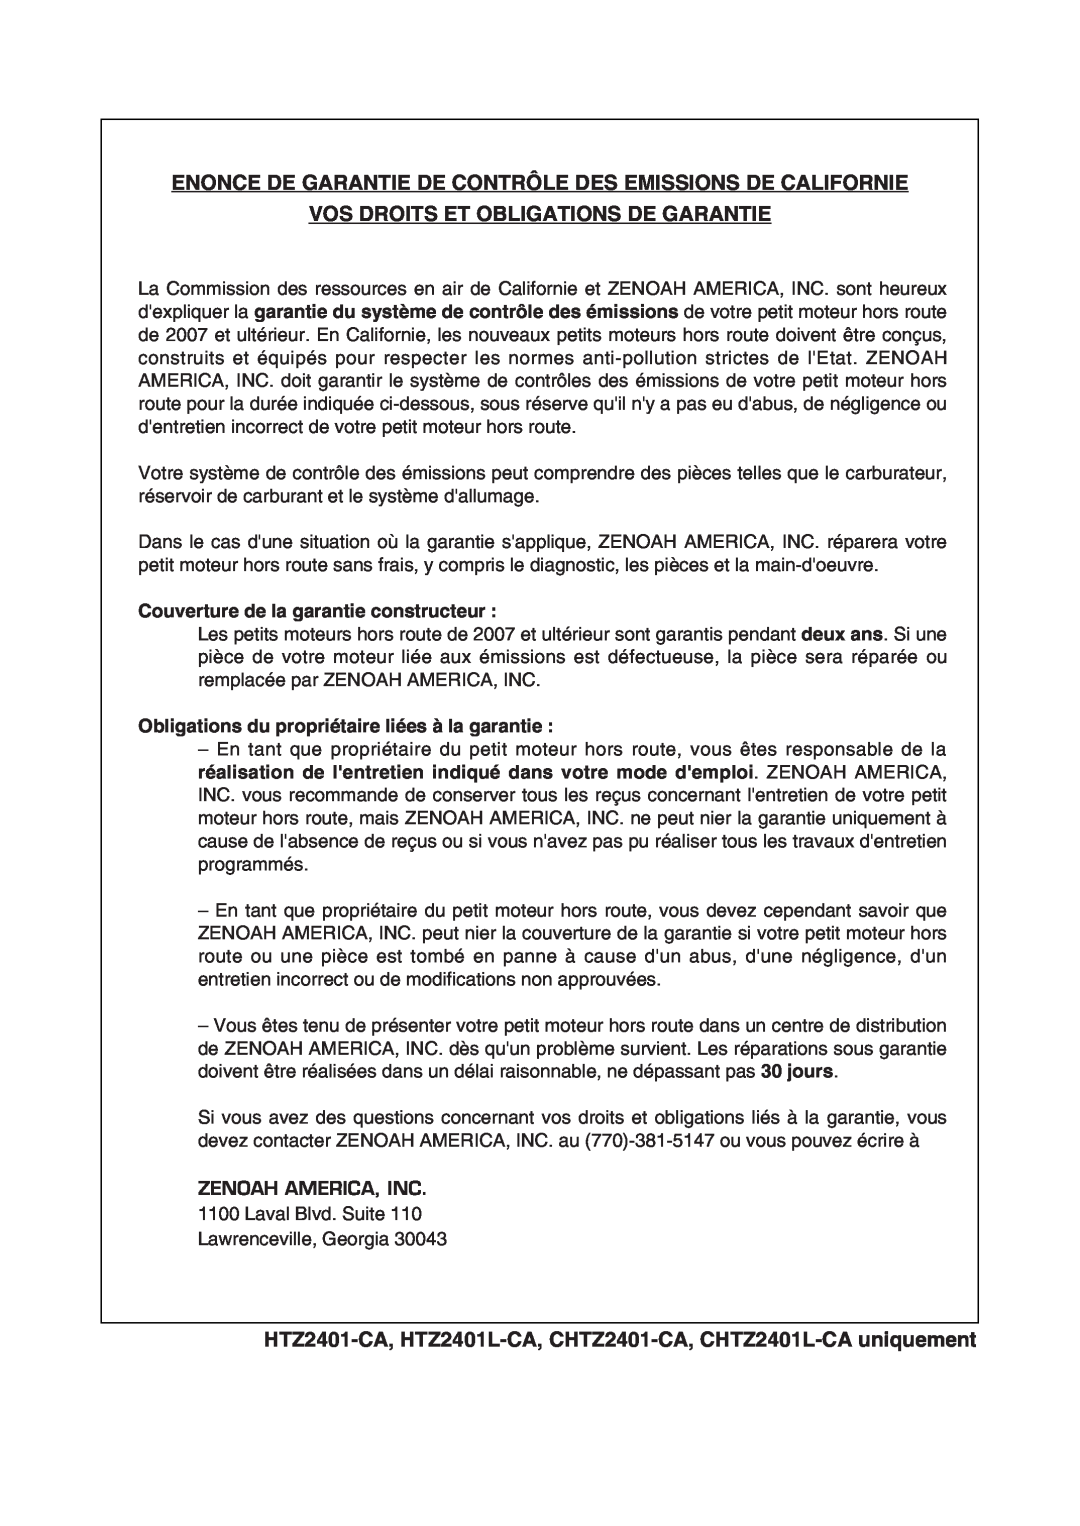 RedMax CHTZ2401L-CA Enonce De Garantie De Contrôle Des Emissions De Californie, Vos Droits Et Obligations De Garantie 